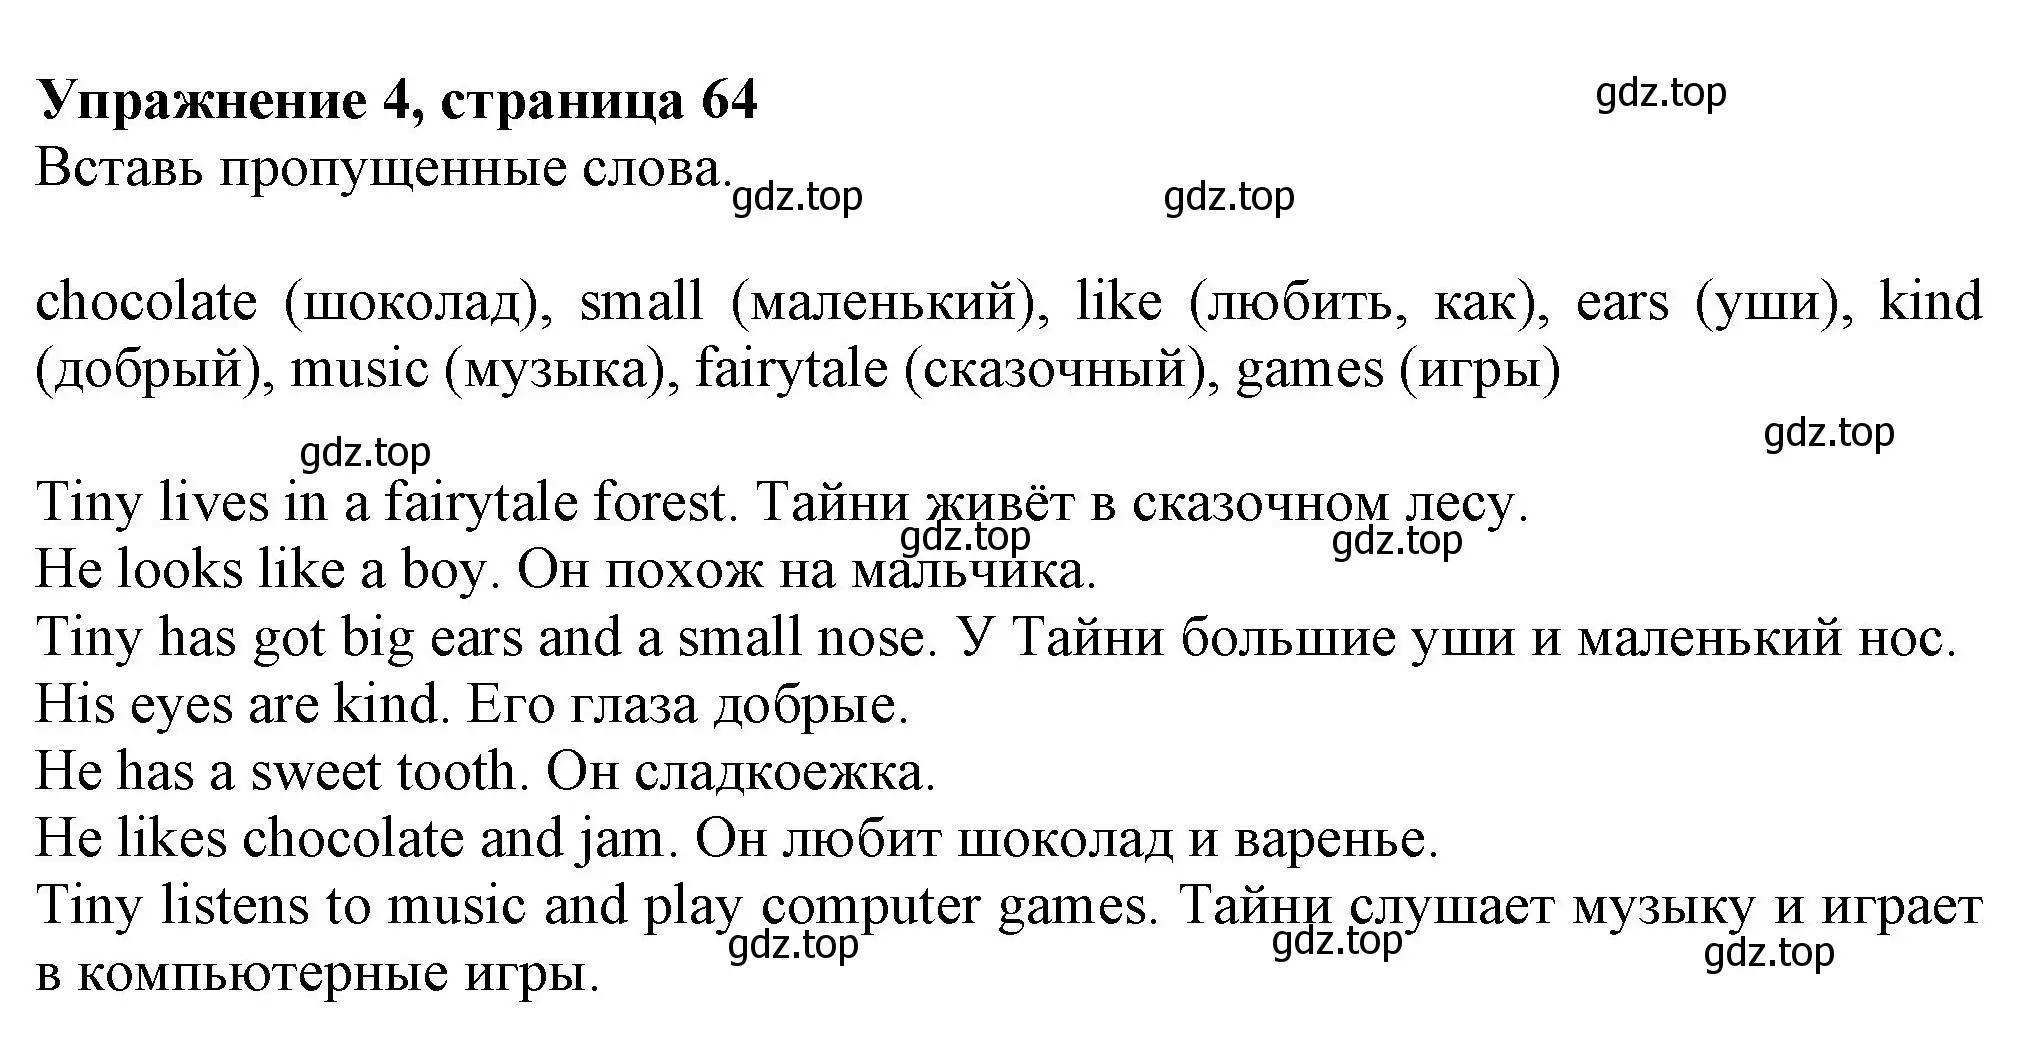 Решение номер 4 (страница 64) гдз по английскому языку 3 класс Биболетова, Денисенко, рабочая тетрадь